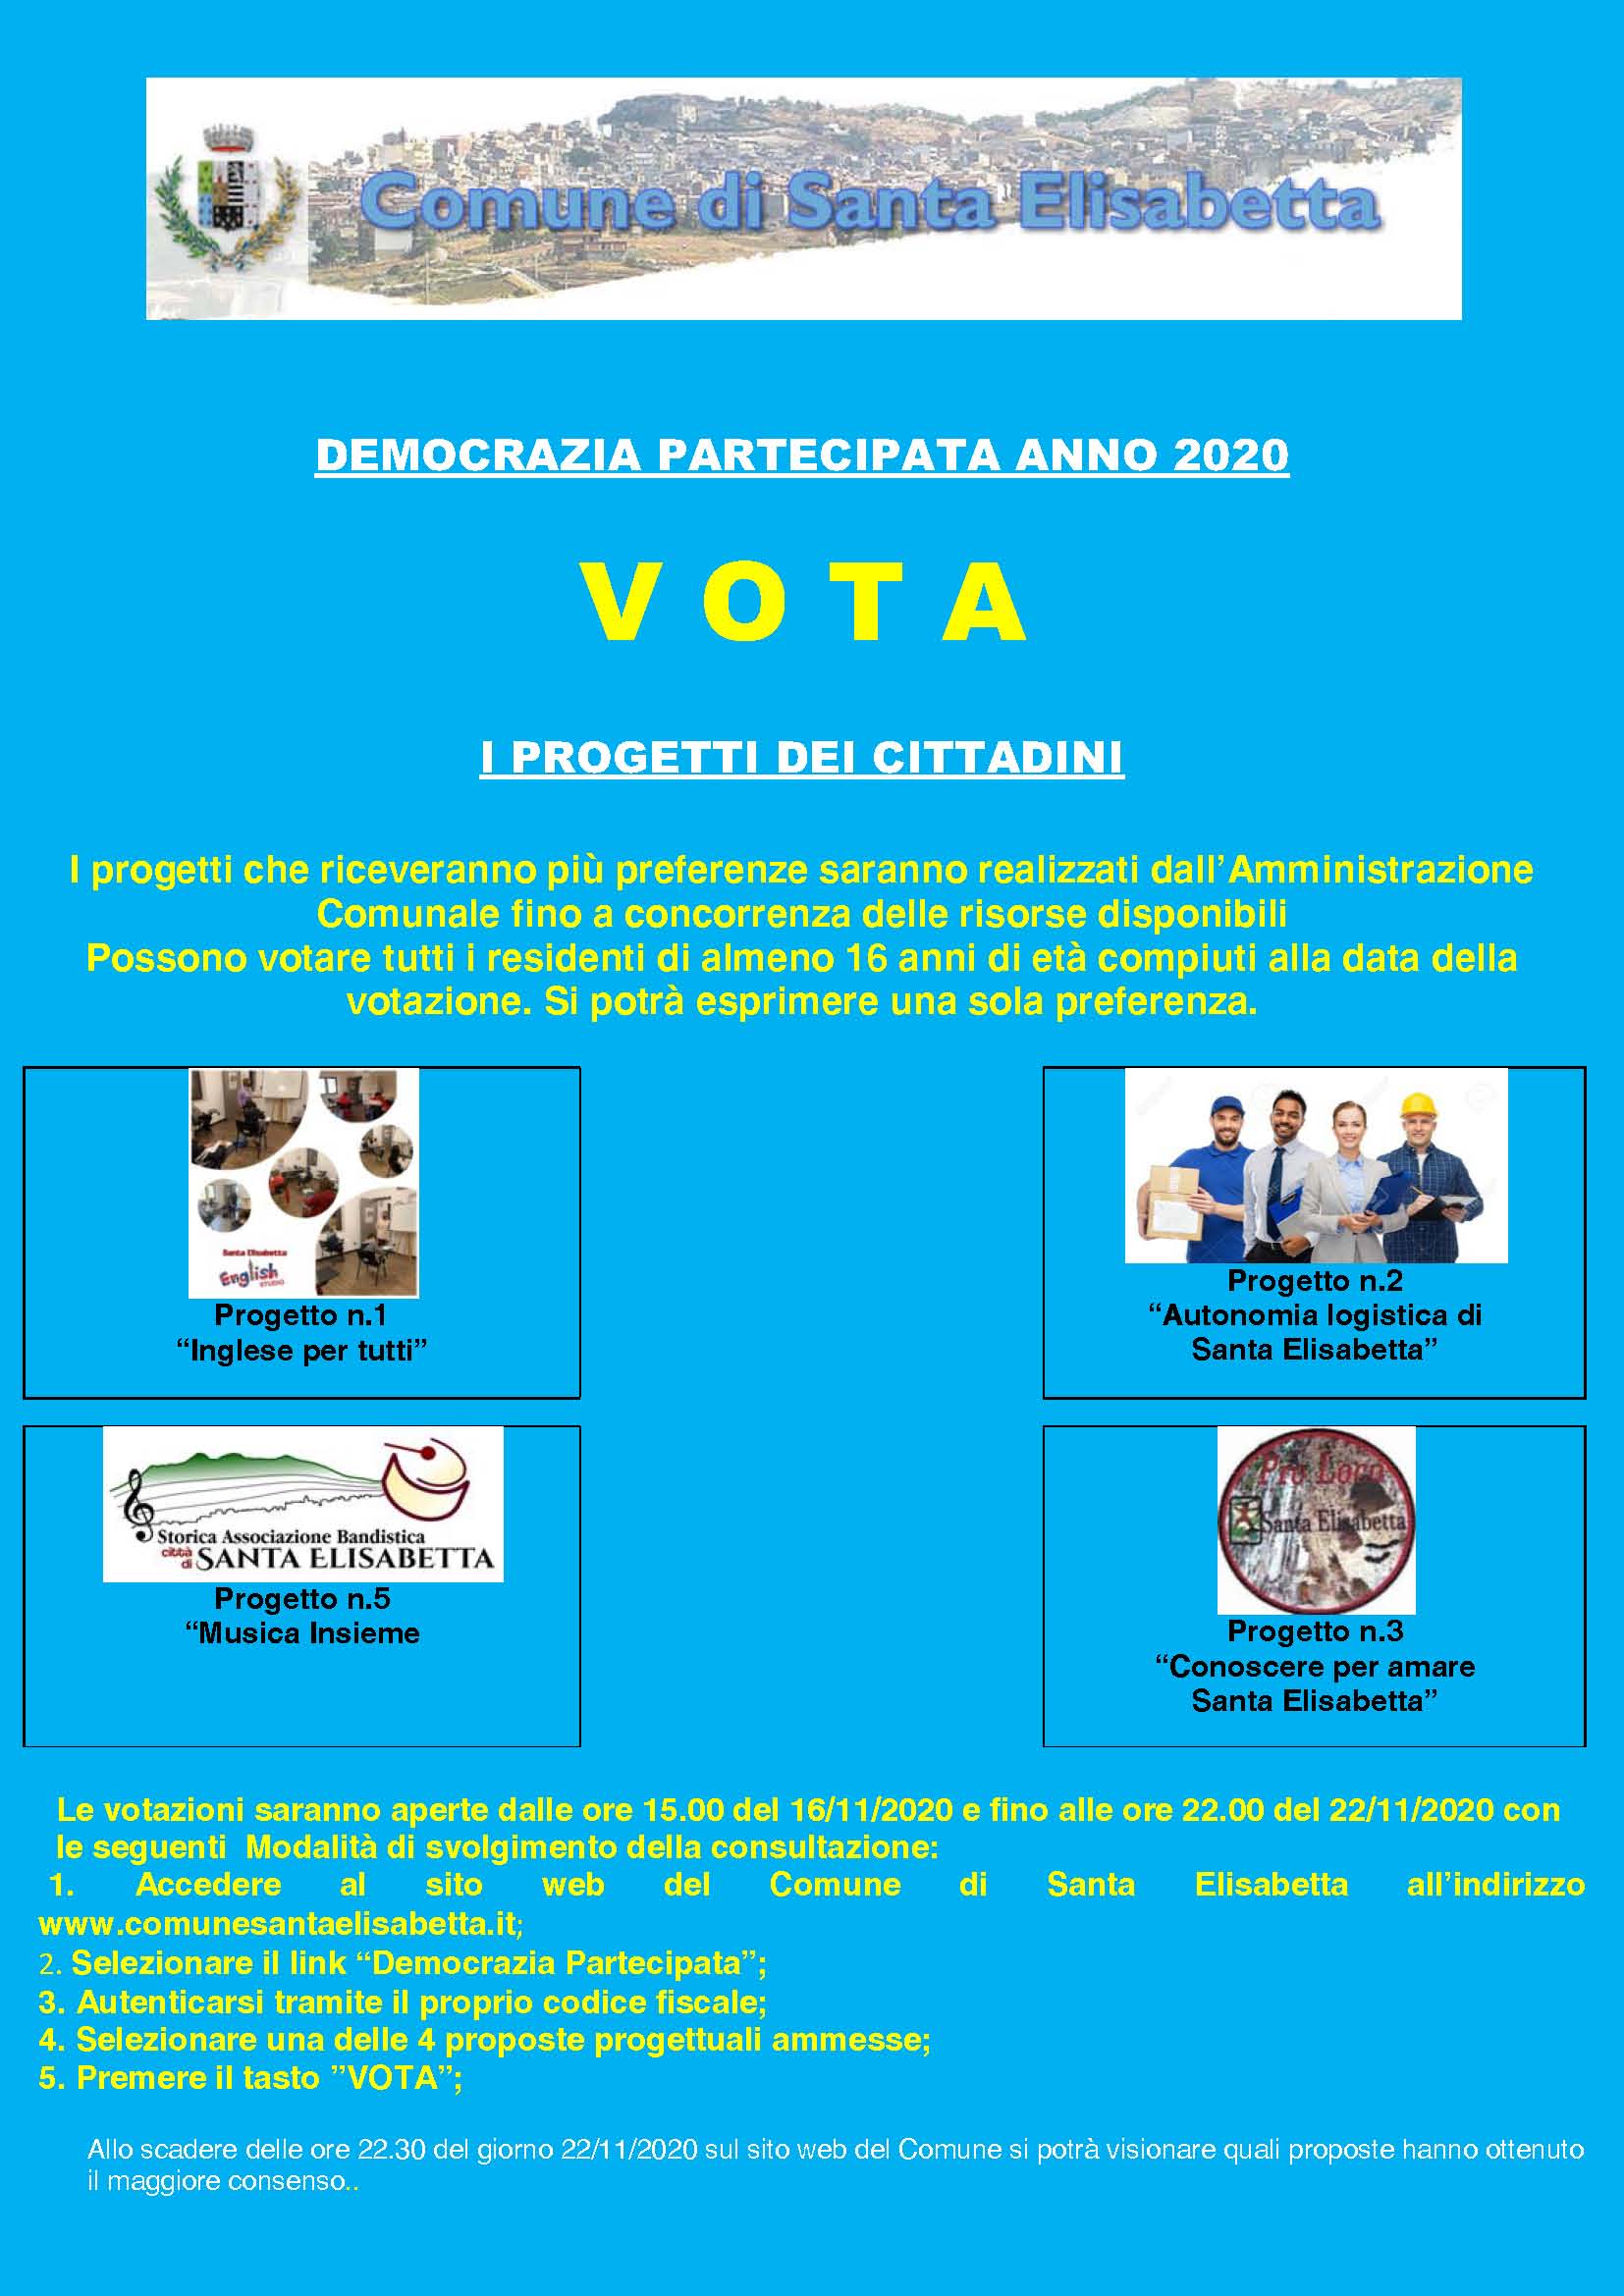 MANIFESTO AVVISO DEMOCRAZIA PARTECIPATA ANNO 2020